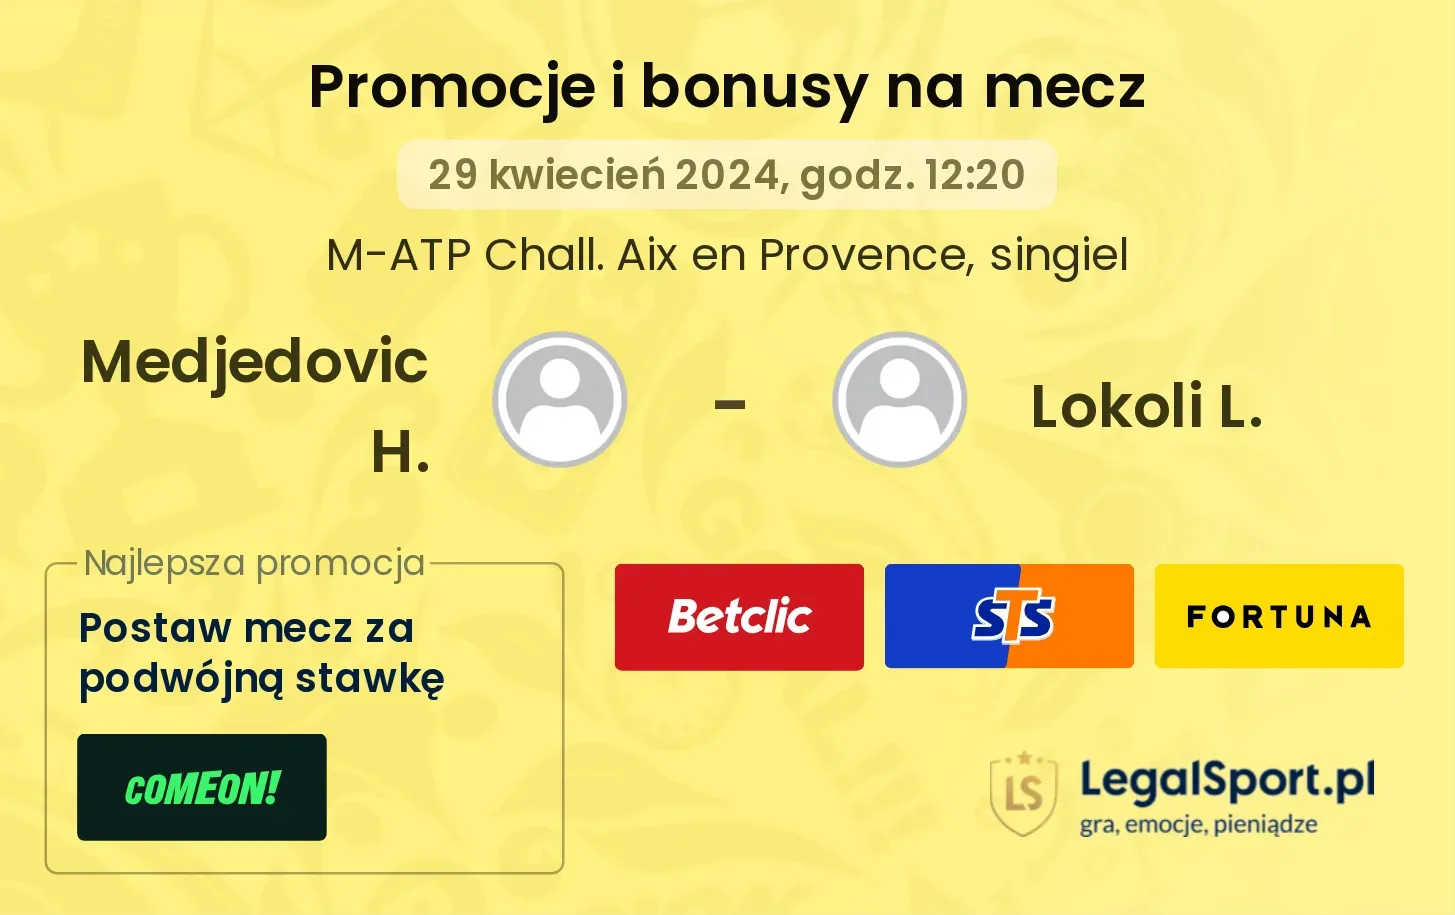 Medjedovic H. - Lokoli L. promocje bonusy na mecz